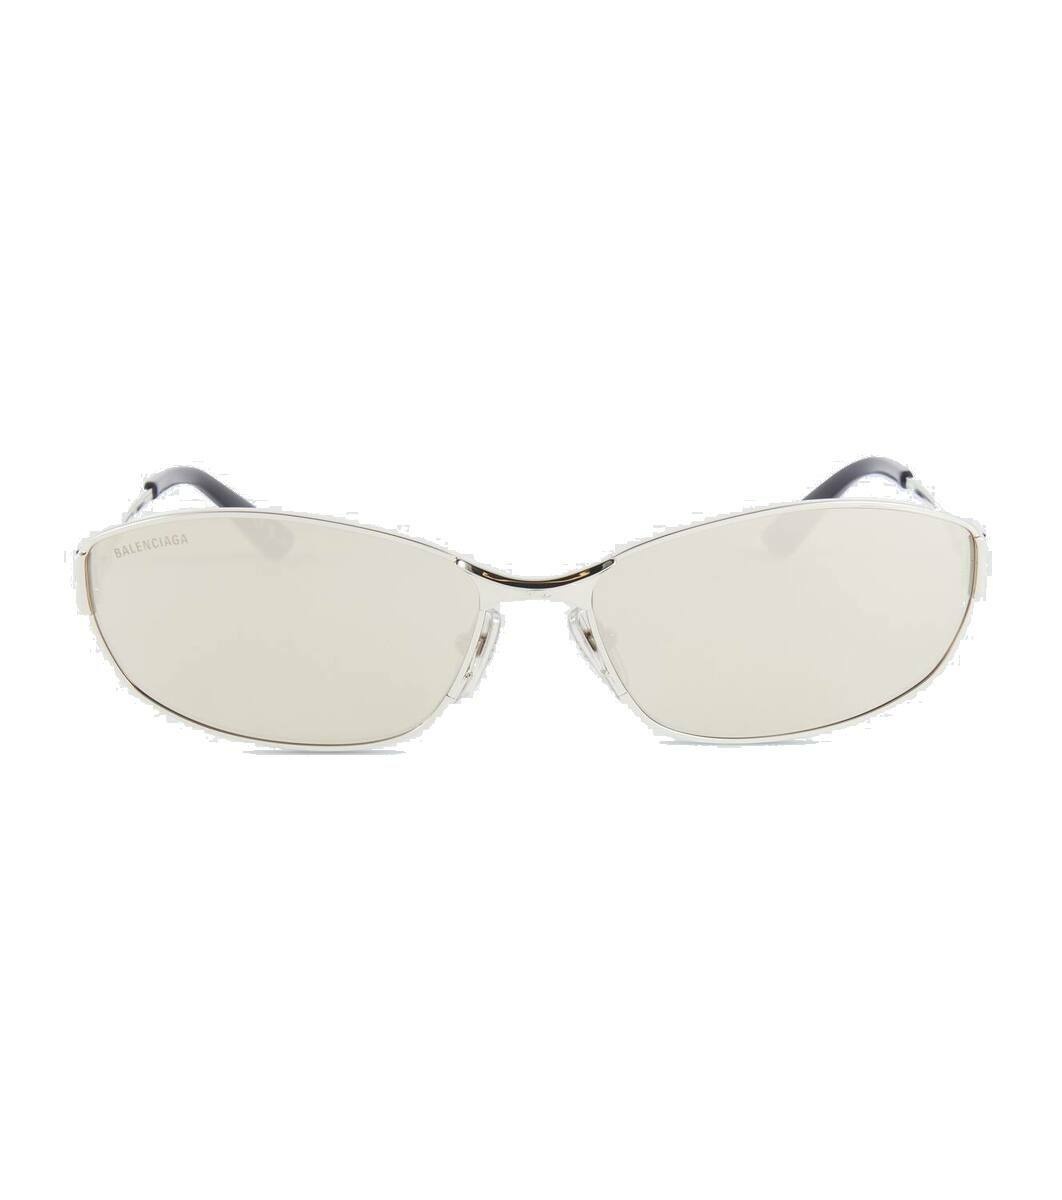 Photo: Balenciaga Mercury oval sunglasses